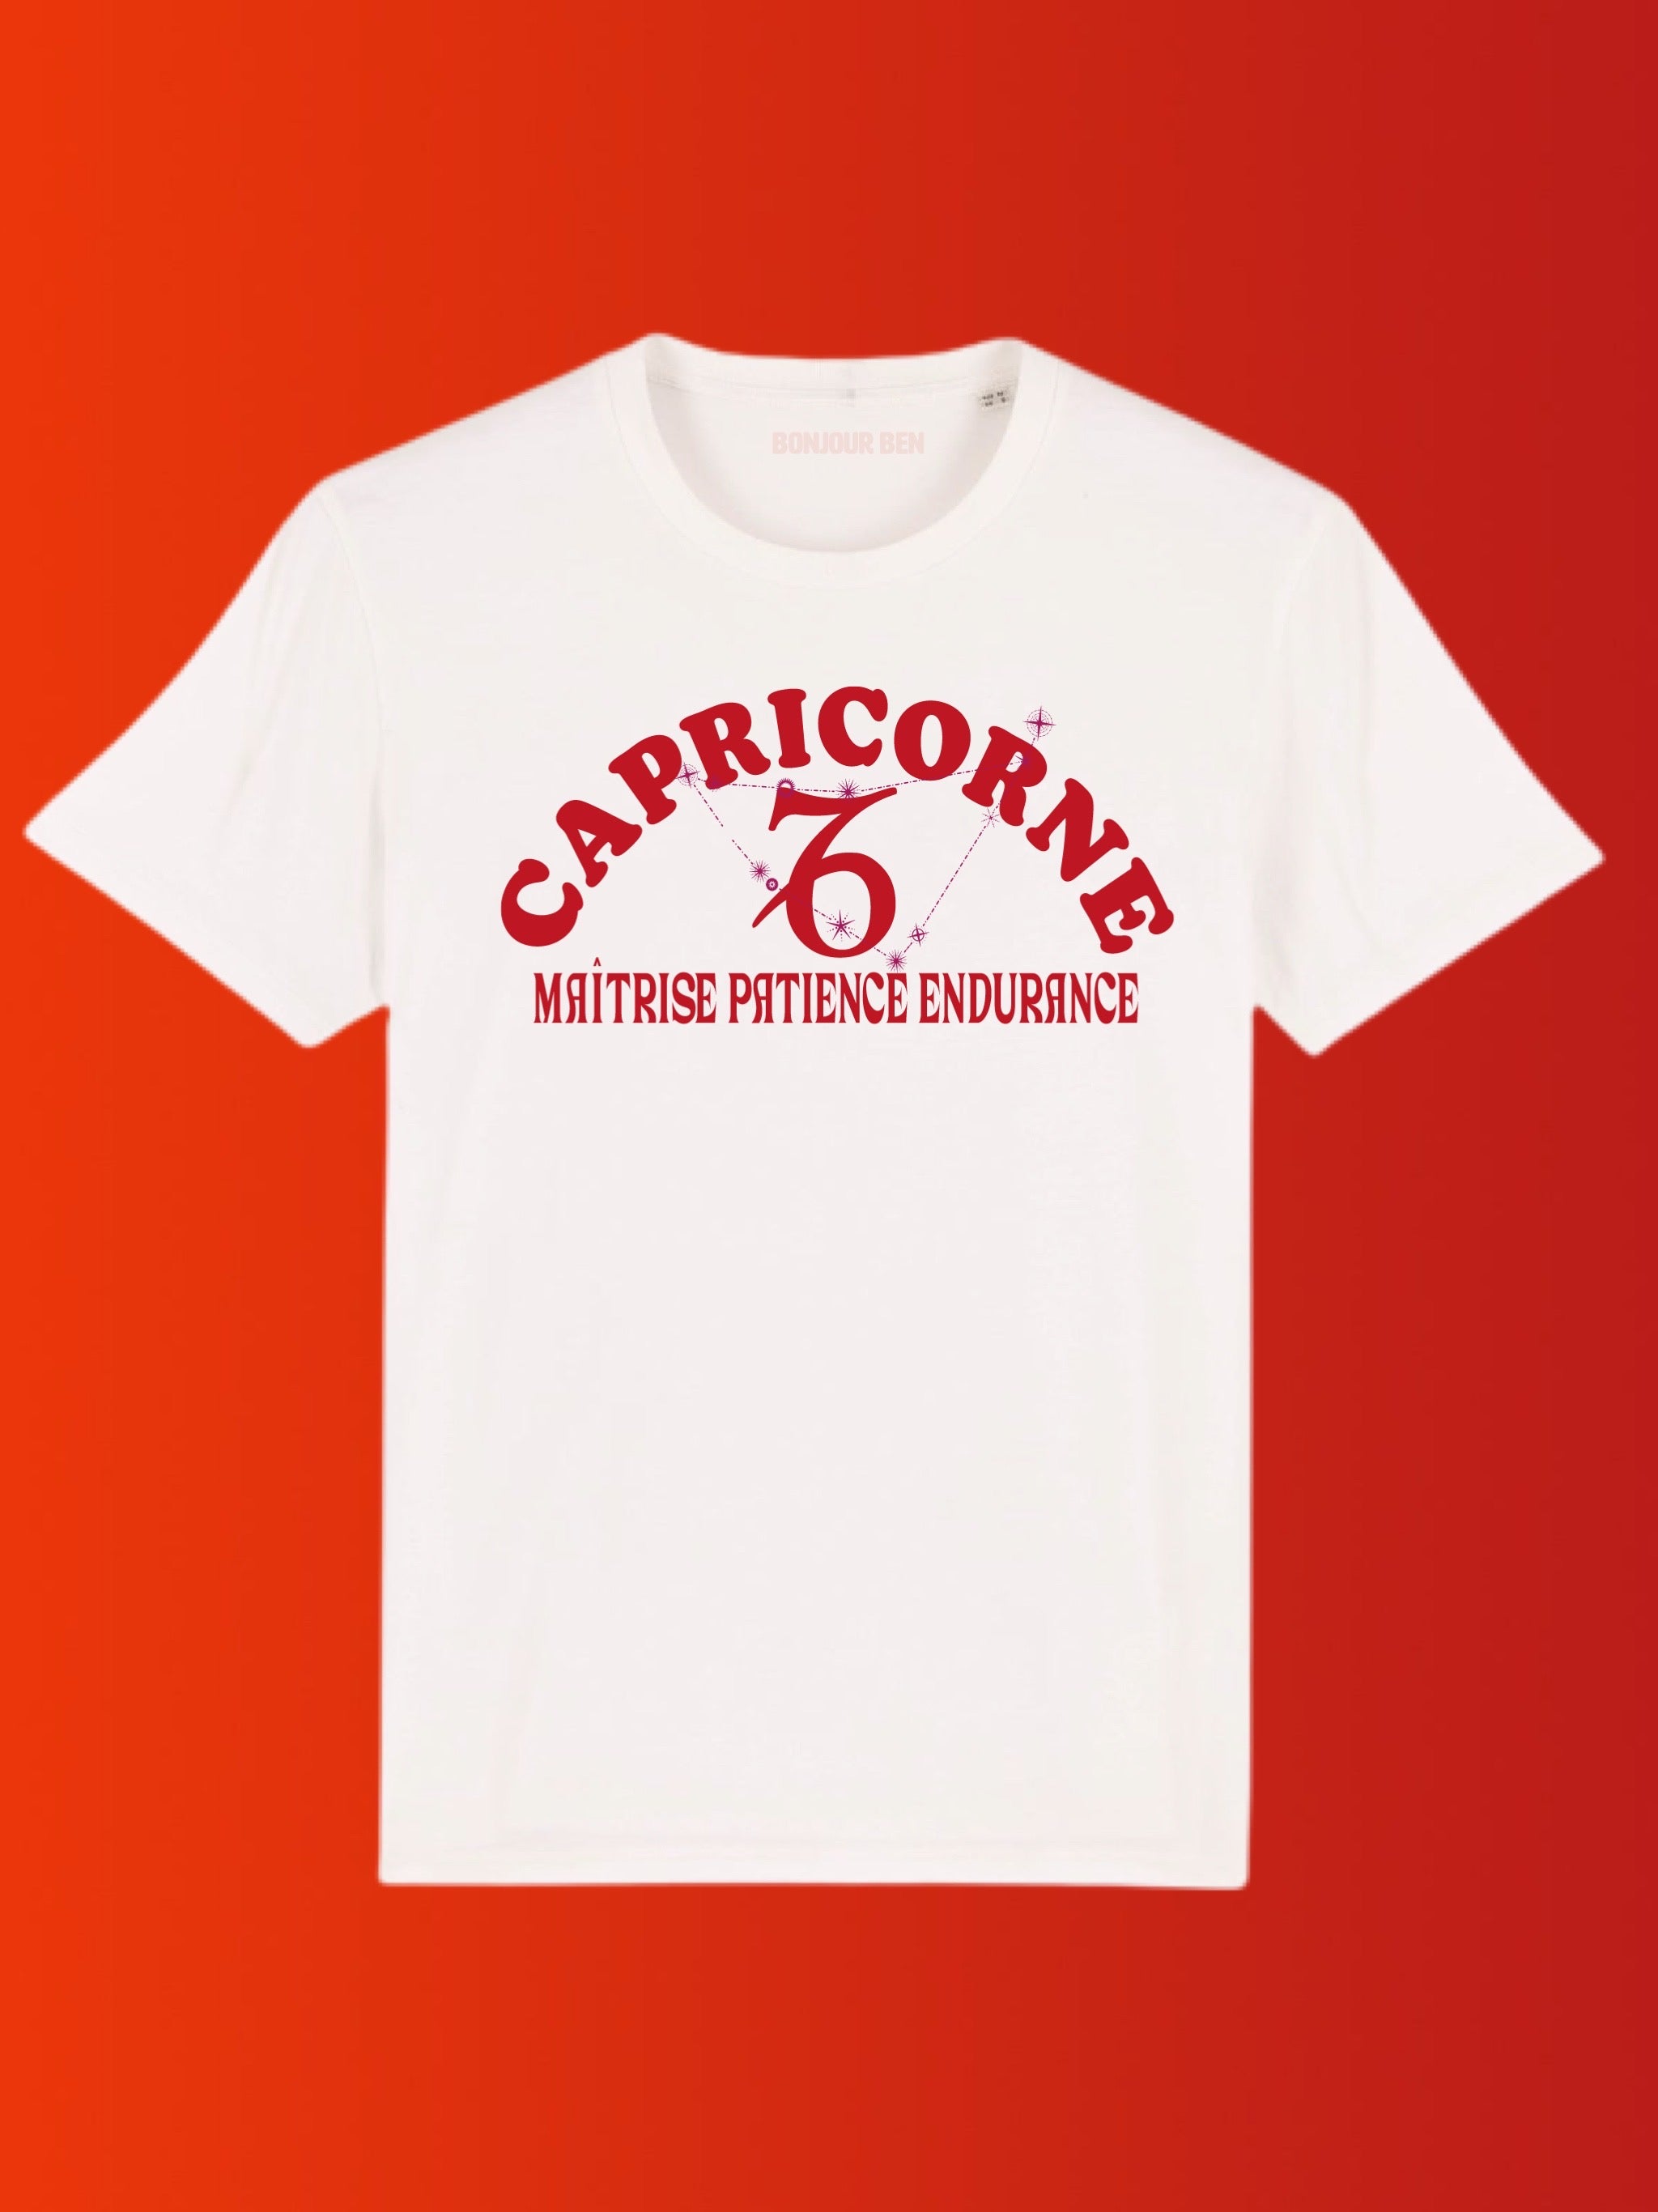 Zodiac signs T-Shirt Capricorn - White/Red